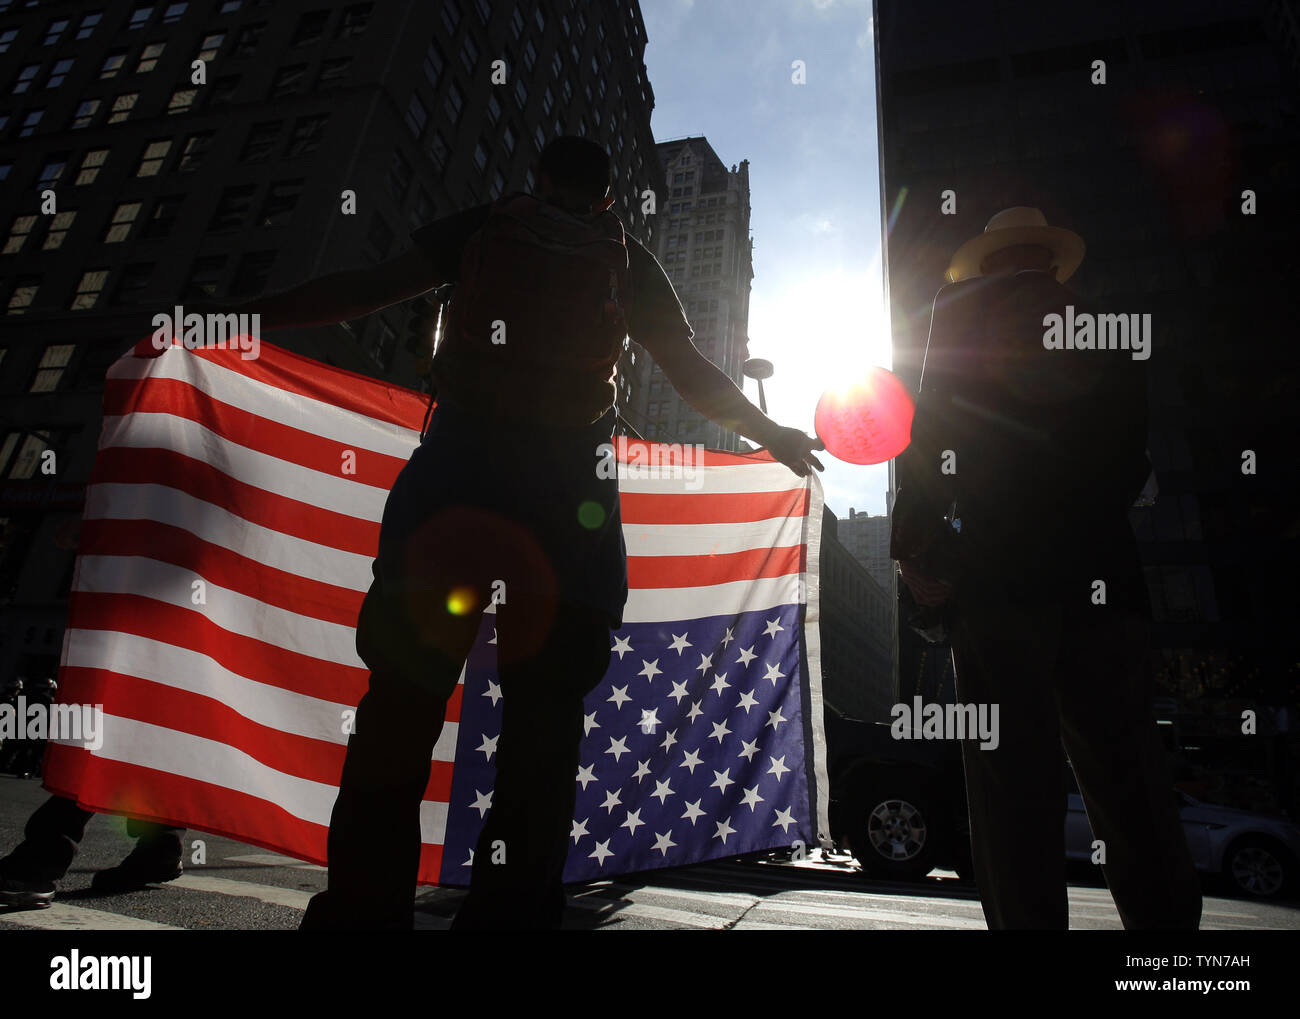 Eine Besetzt die Wall Street Demonstrant hält die amerikanische Flagge mit der Oberseite nach unten auf den Straßen in der Nähe der New York Stock Exchange in New York City am 17. September 2012. Mehrere Proteste sind den ganzen Tag auf der 1. Jahrestag der Besetzt die Wall Street Bewegung geplant. UPI/John angelillo Stockfoto